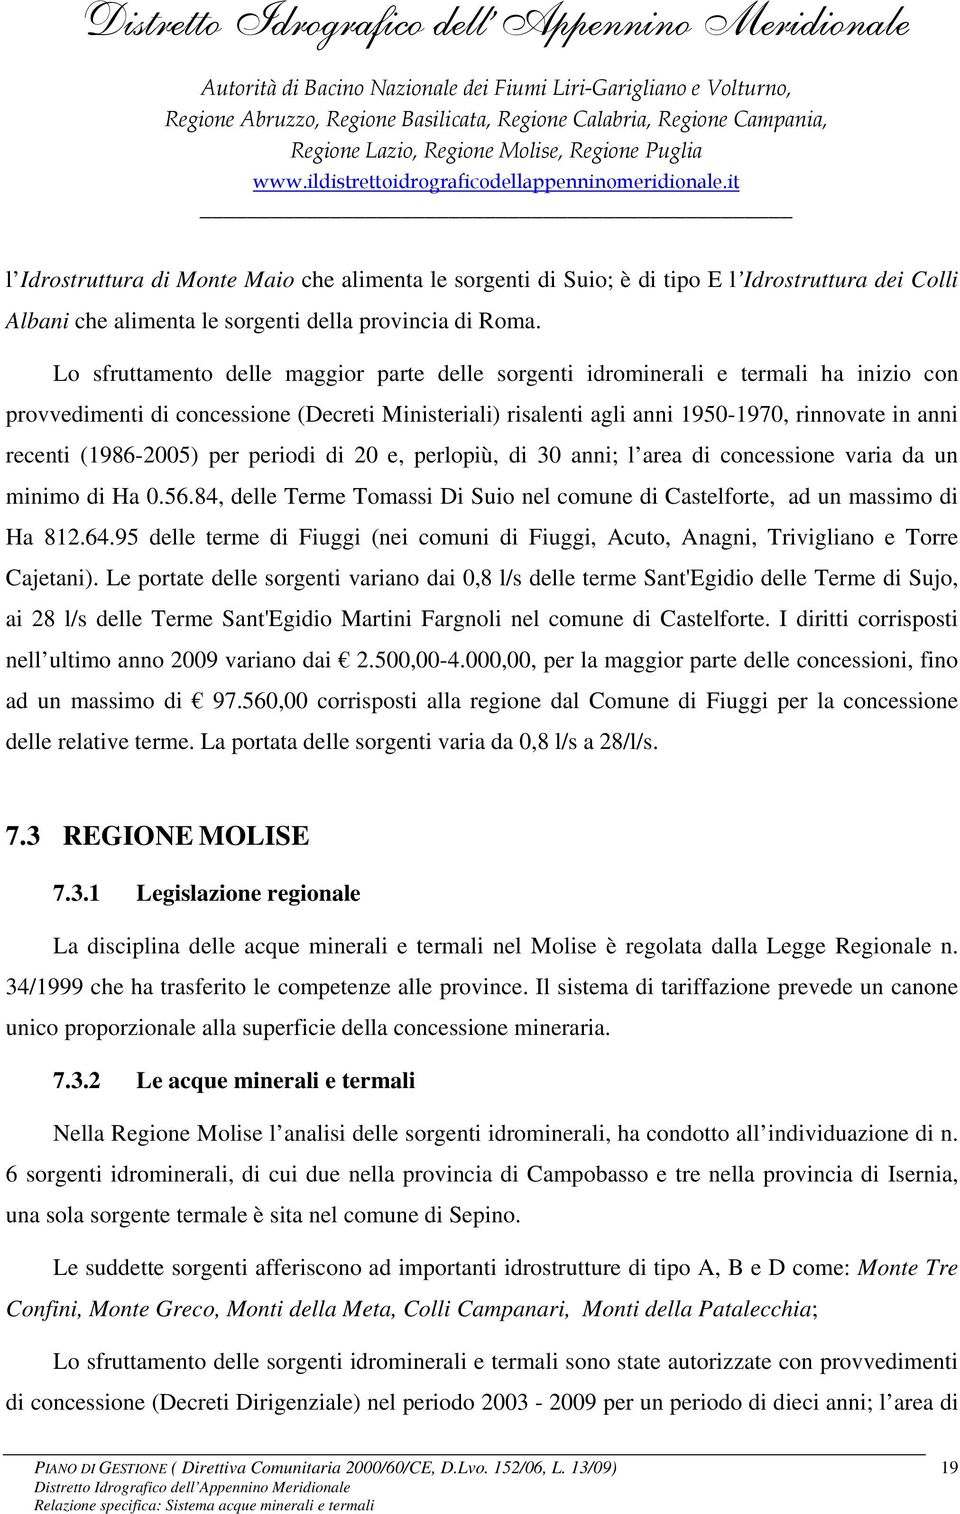 (1986-2005) per periodi di 20 e, perlopiù, di 30 anni; l area di concessione varia da un minimo di Ha 0.56.84, delle Terme Tomassi Di Suio nel comune di Castelforte, ad un massimo di Ha 812.64.